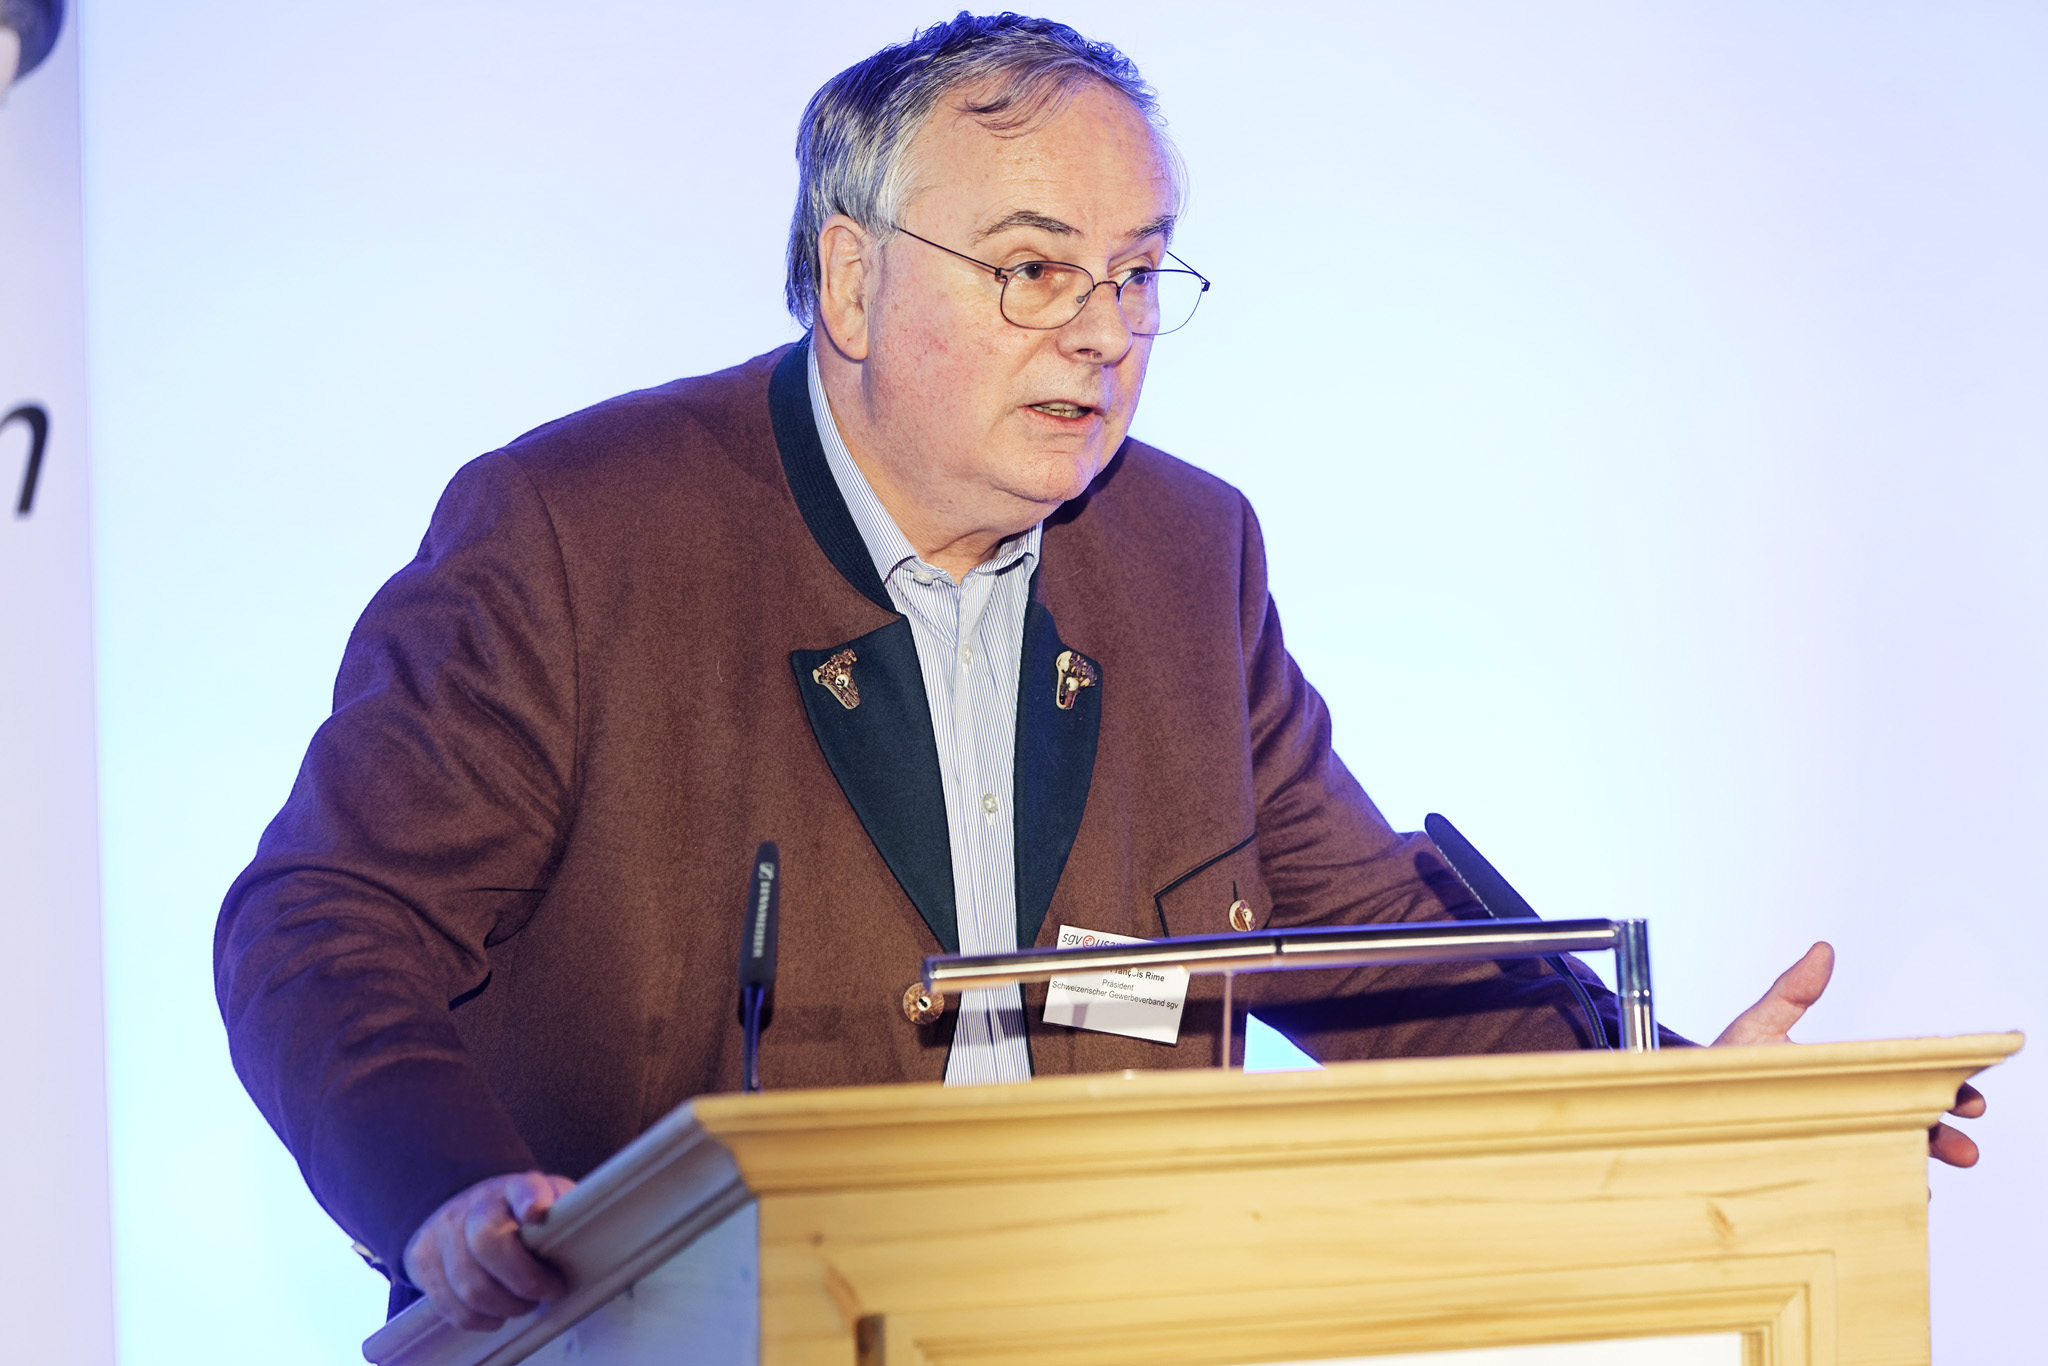 Jean-François Rime, Präsident des sgv und Nationalrat SVP/FR, eröffnete die 70. Gewerbliche Winterkonferenz